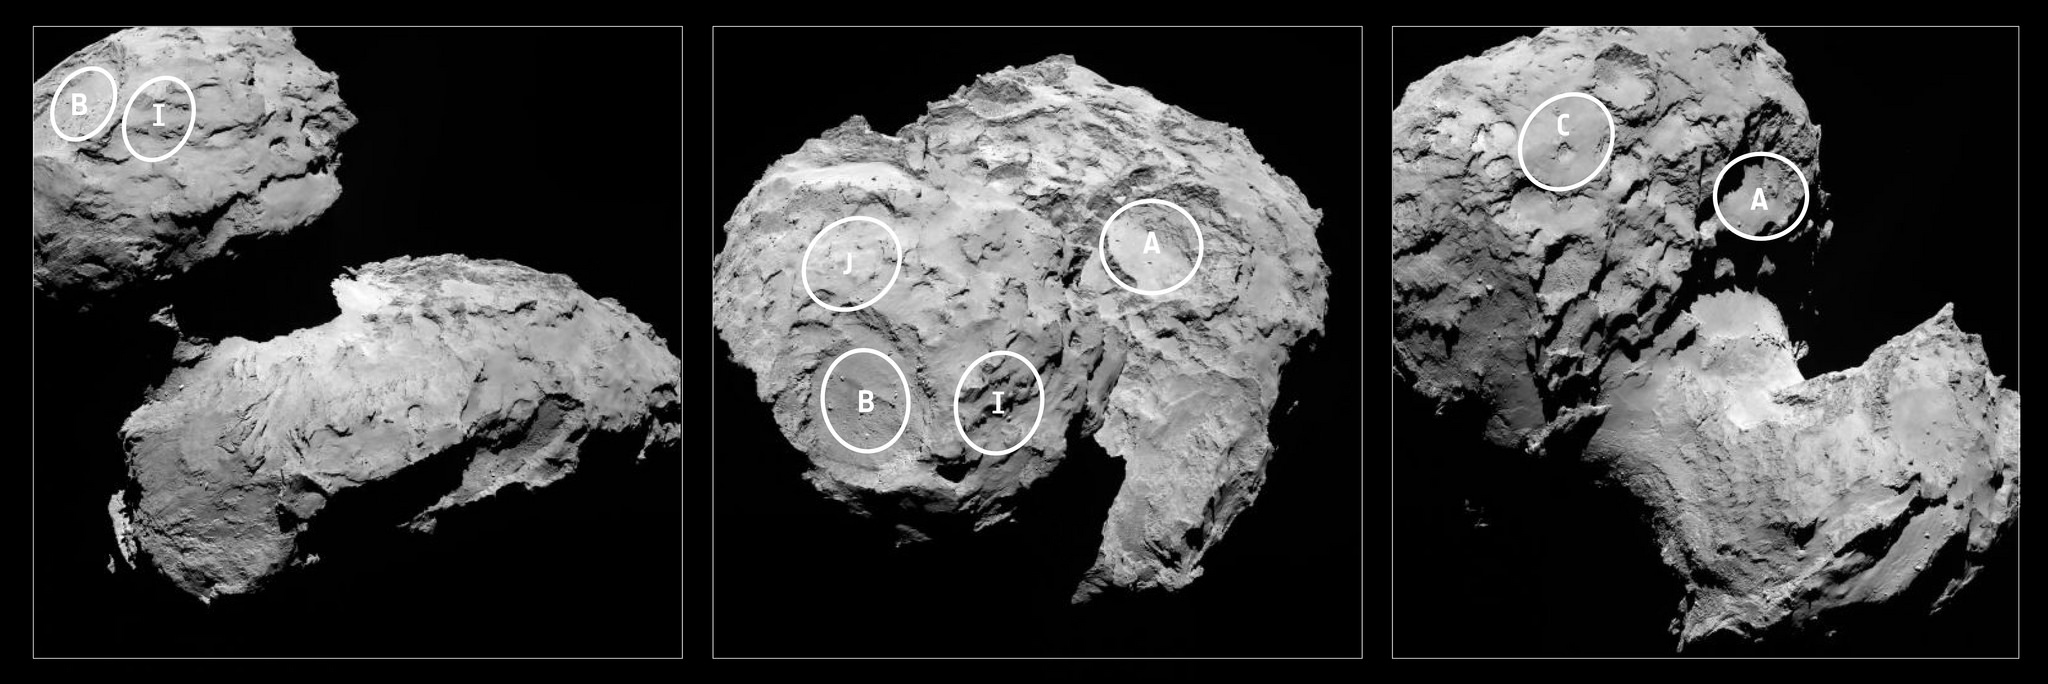 Les sites candidats pour l'atterrissage de Philae sur Rosetta